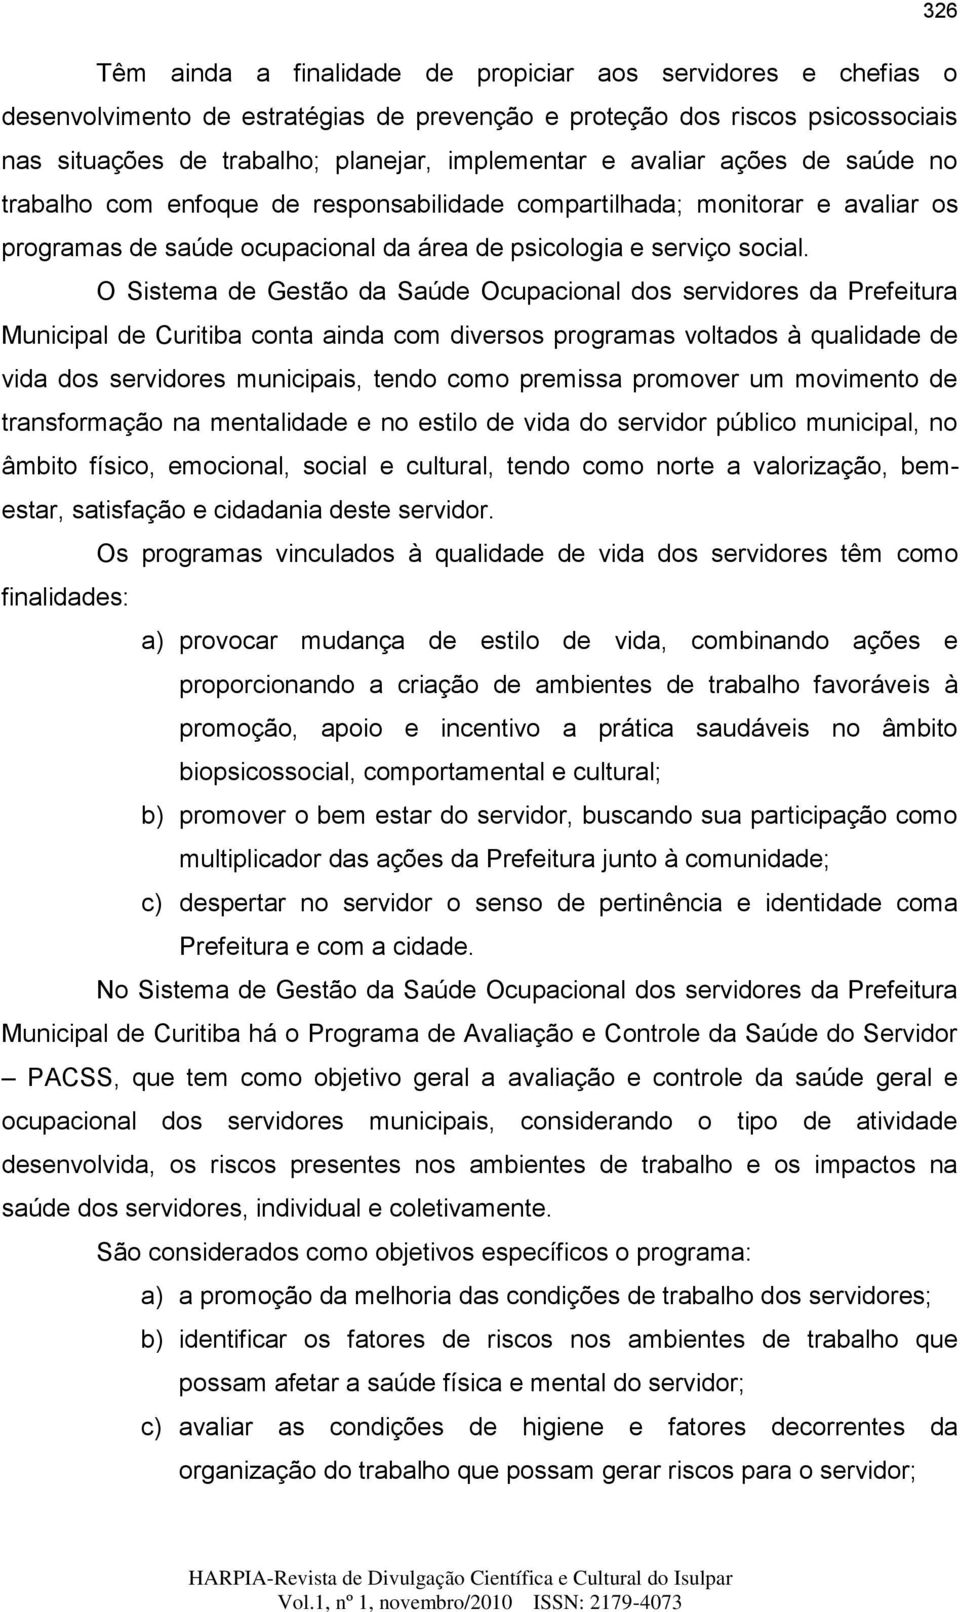 O Sistema de Gestão da Saúde Ocupacional dos servidores da Prefeitura Municipal de Curitiba conta ainda com diversos programas voltados à qualidade de vida dos servidores municipais, tendo como